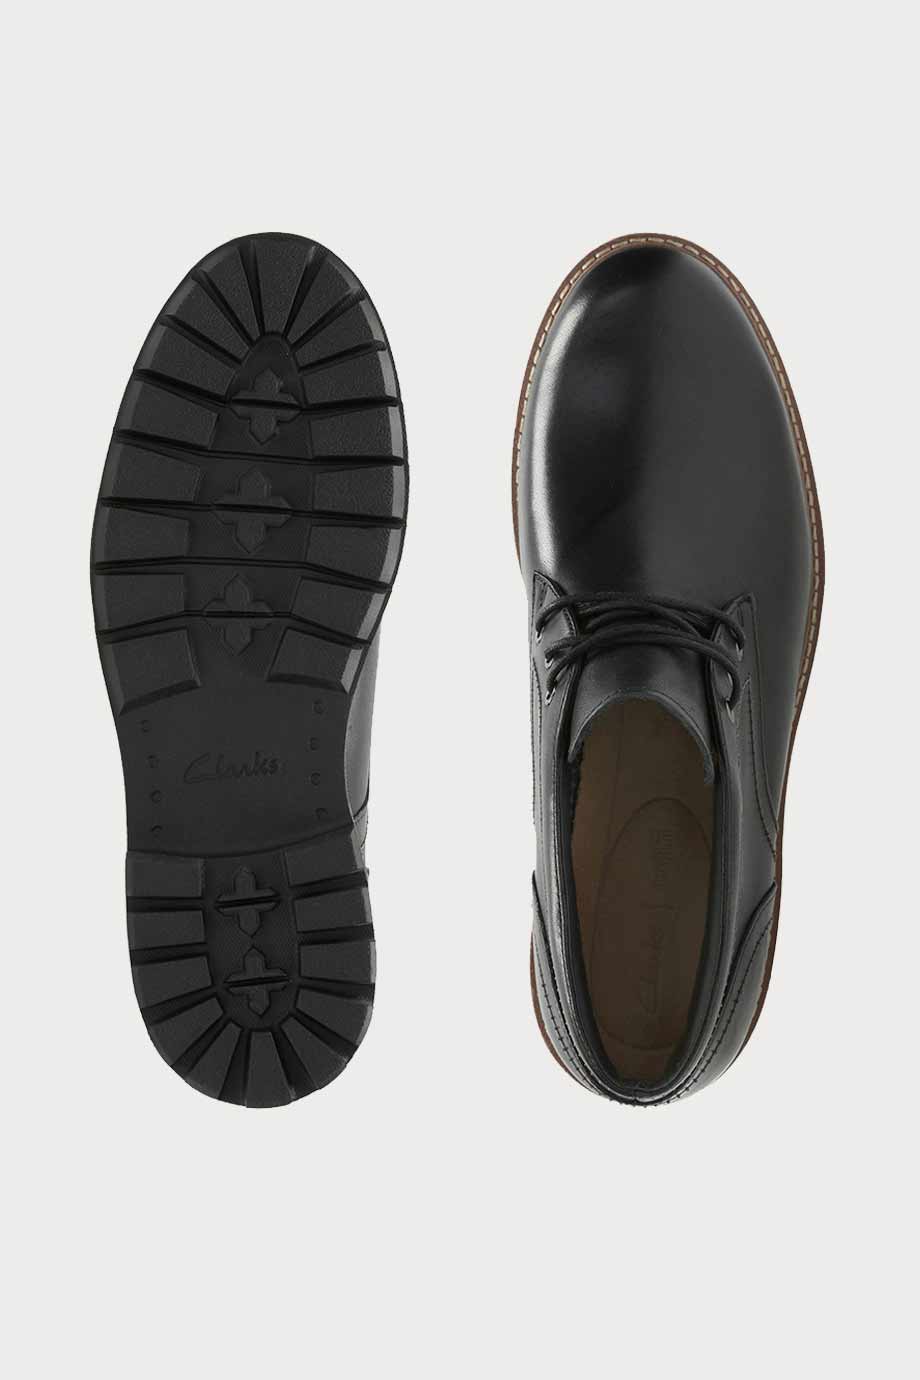 spiridoula metheniti shoes xalkida p batcombe lo black leather clarks 7 1